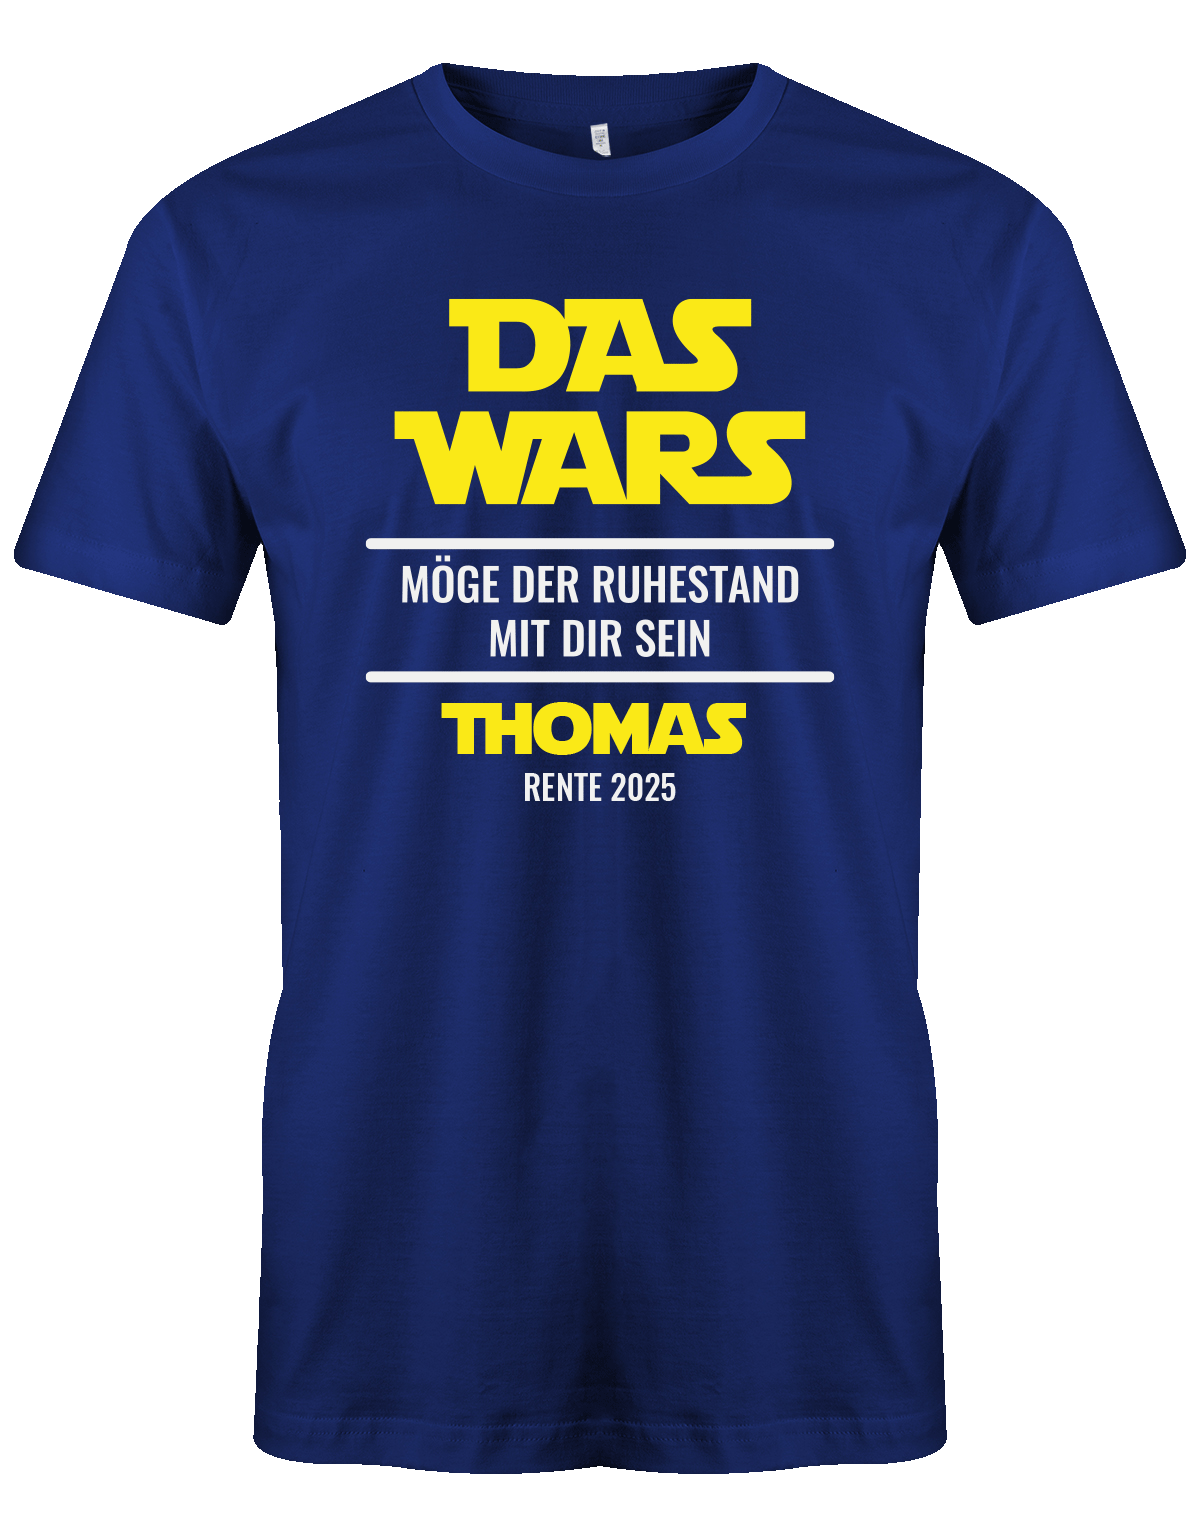 das-wars-moege-der-ruhestand-mit-dir-sein-rente-2025-blau-tshirt-shirt-T-shirt